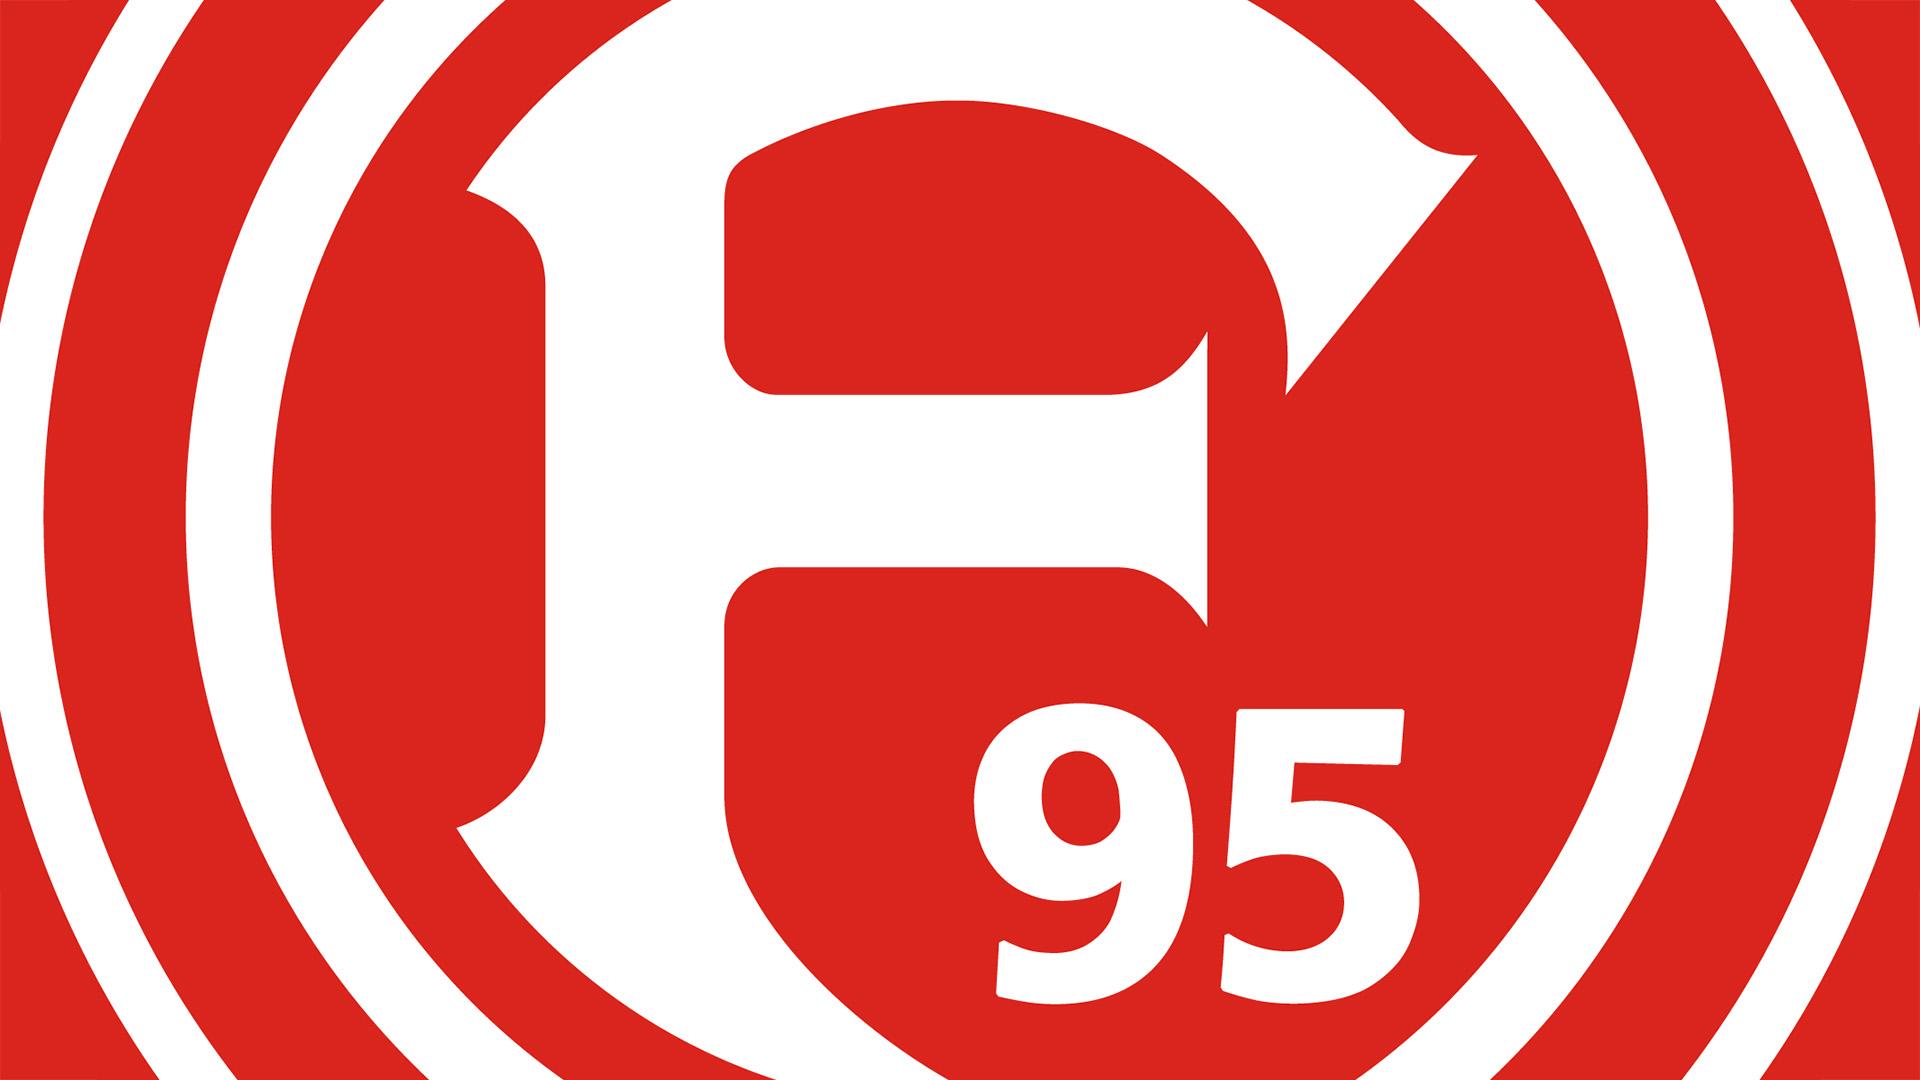 Fortuna Düsseldorf (F95)